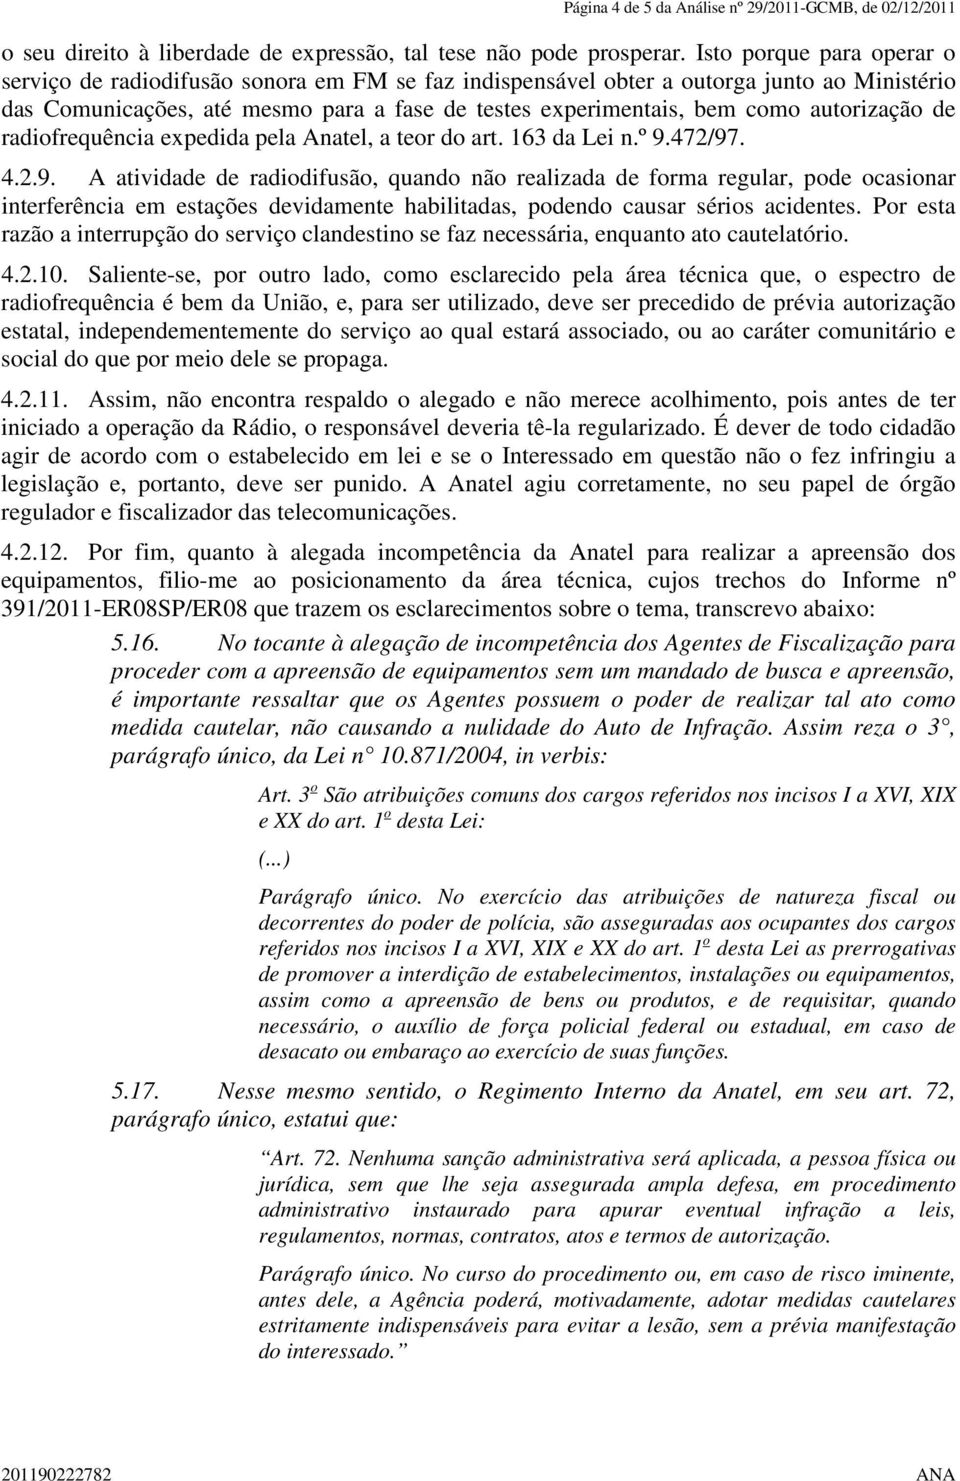 autorização de radiofrequência expedida pela Anatel, a teor do art. 163 da Lei n.º 9.